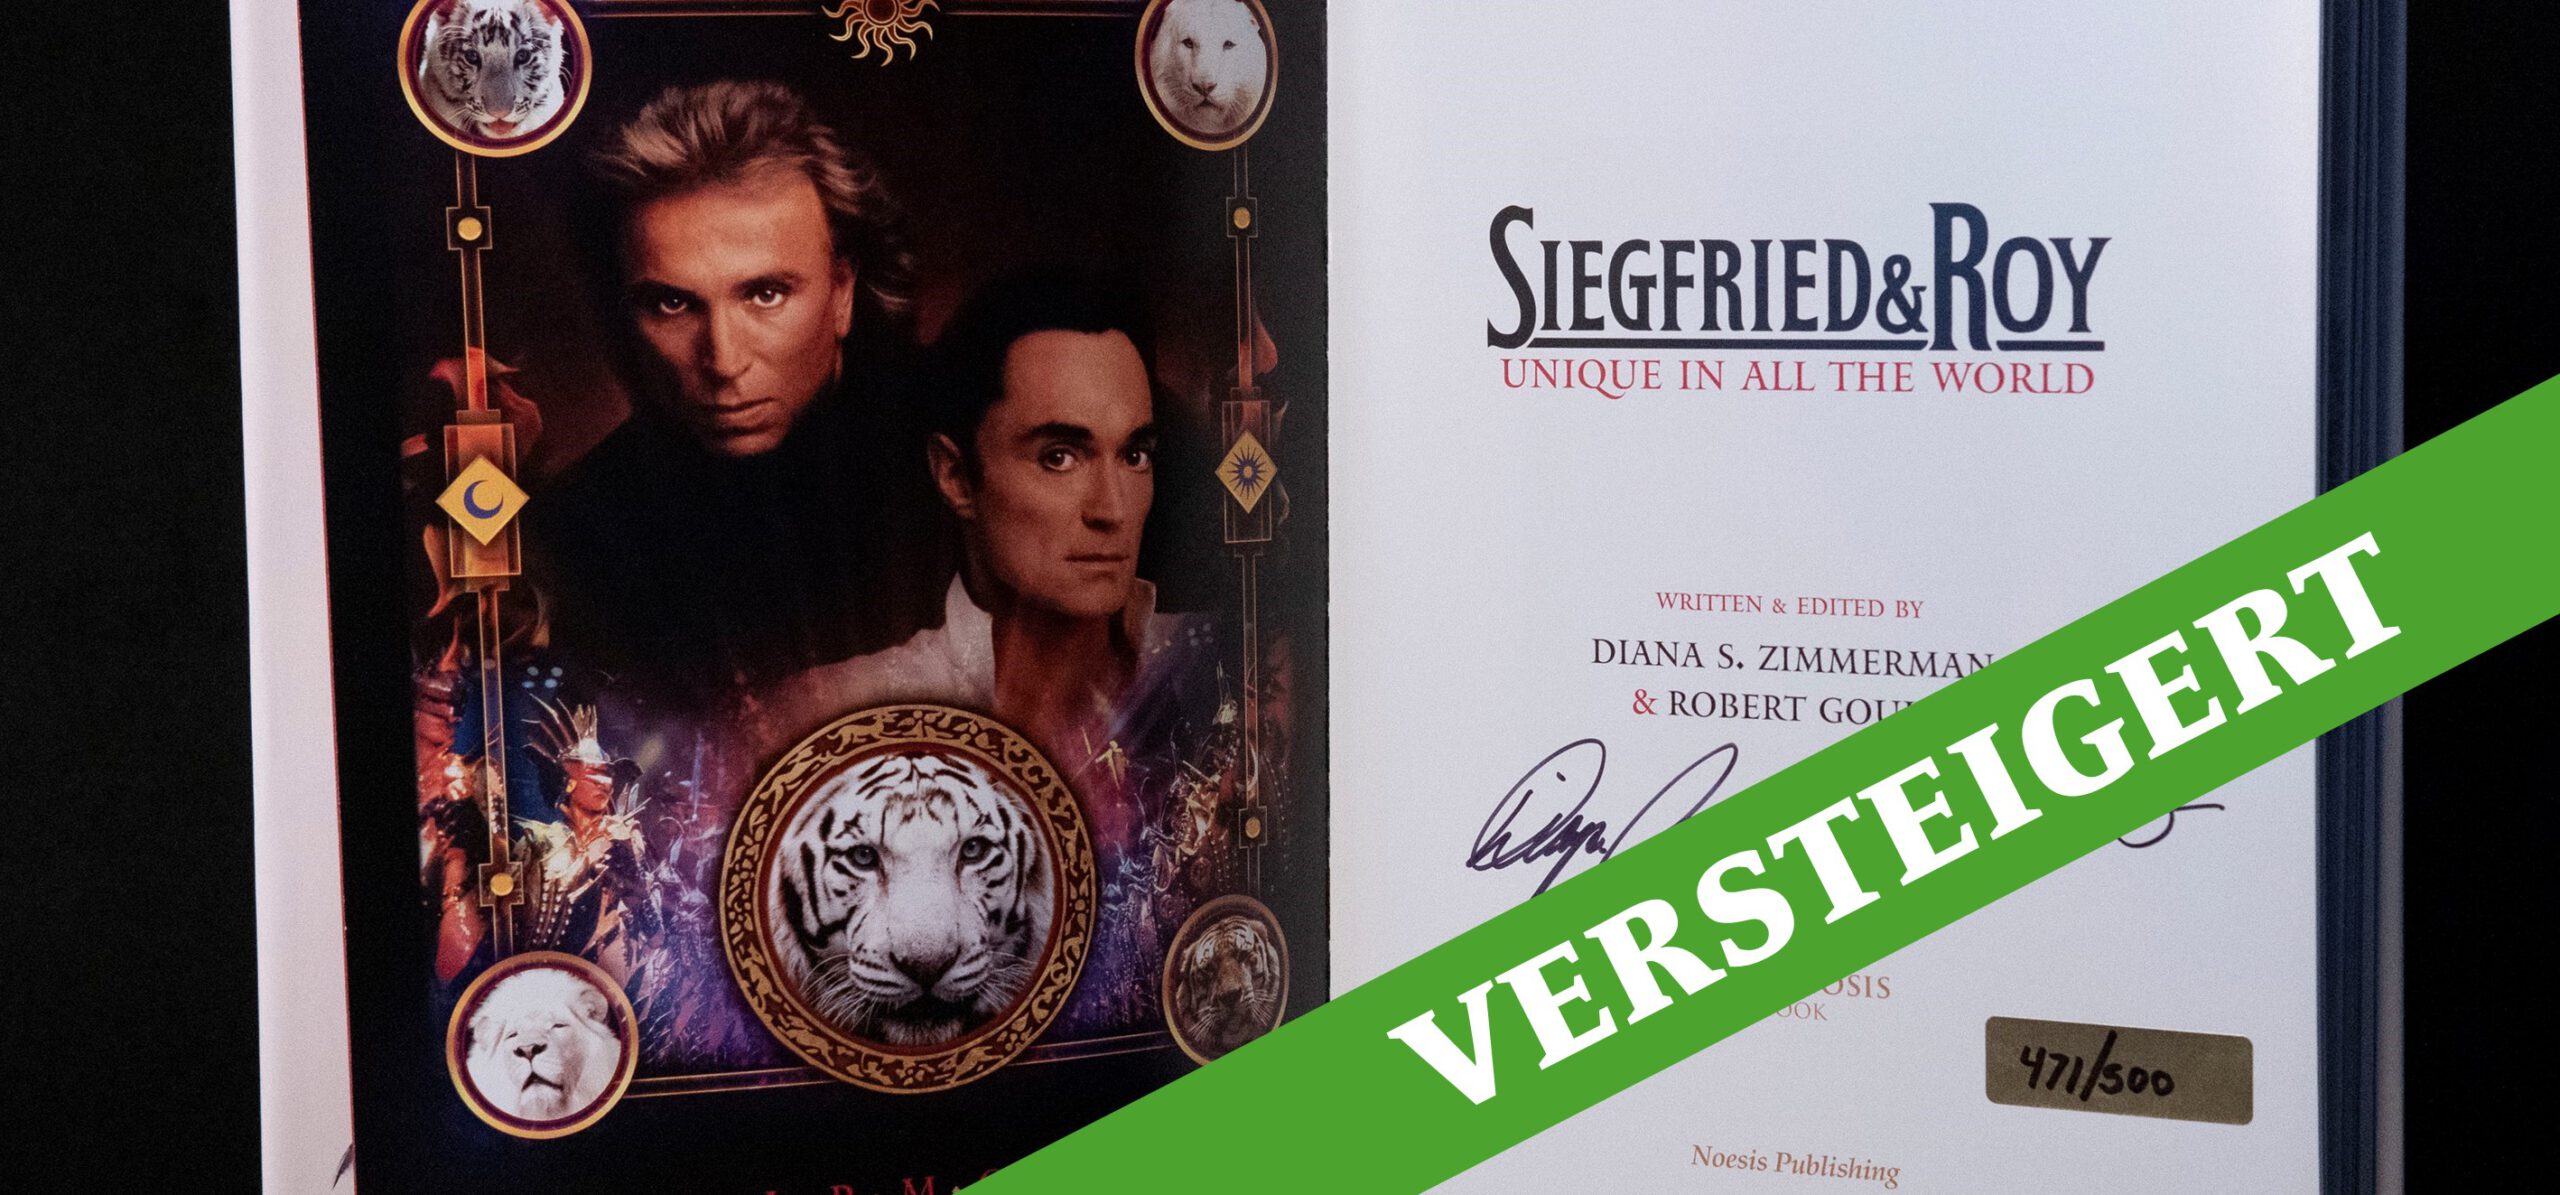 Charity-Auktion: Buch aus dem persönlichen Nachlass von Siegfried & Roy